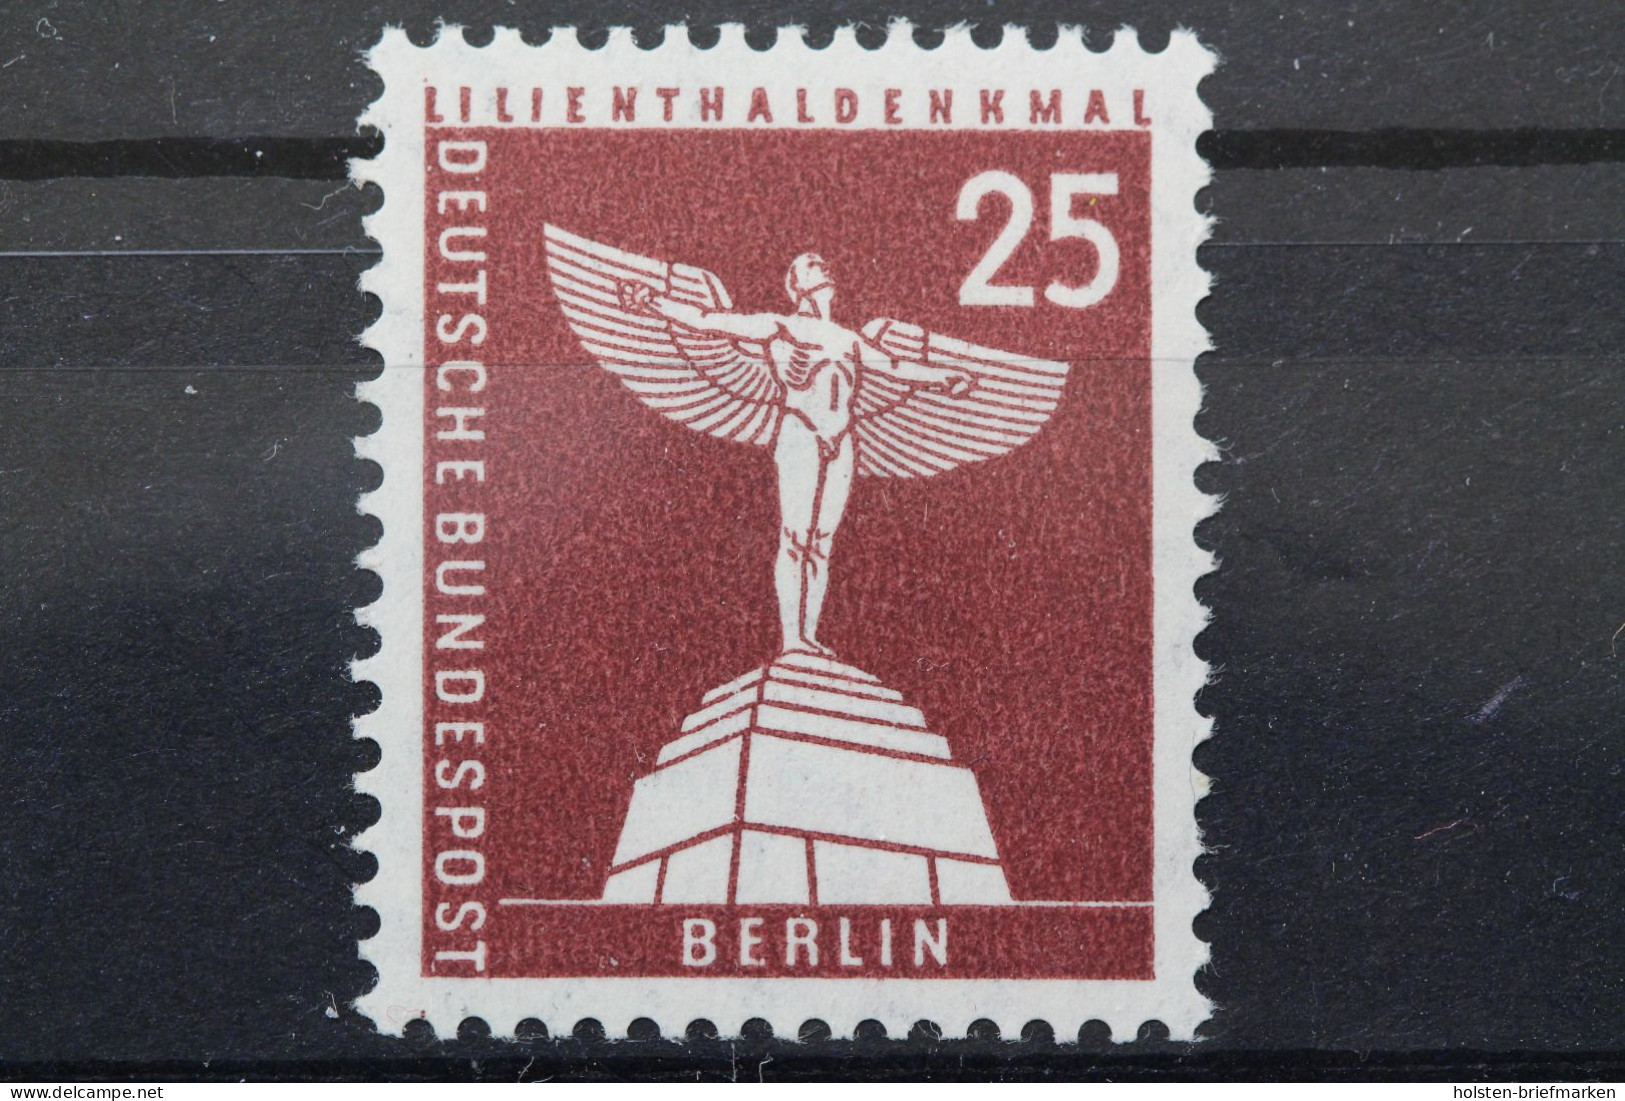 Berlin, MiNr. 147 W V R, Postfrisch - Rollenmarken